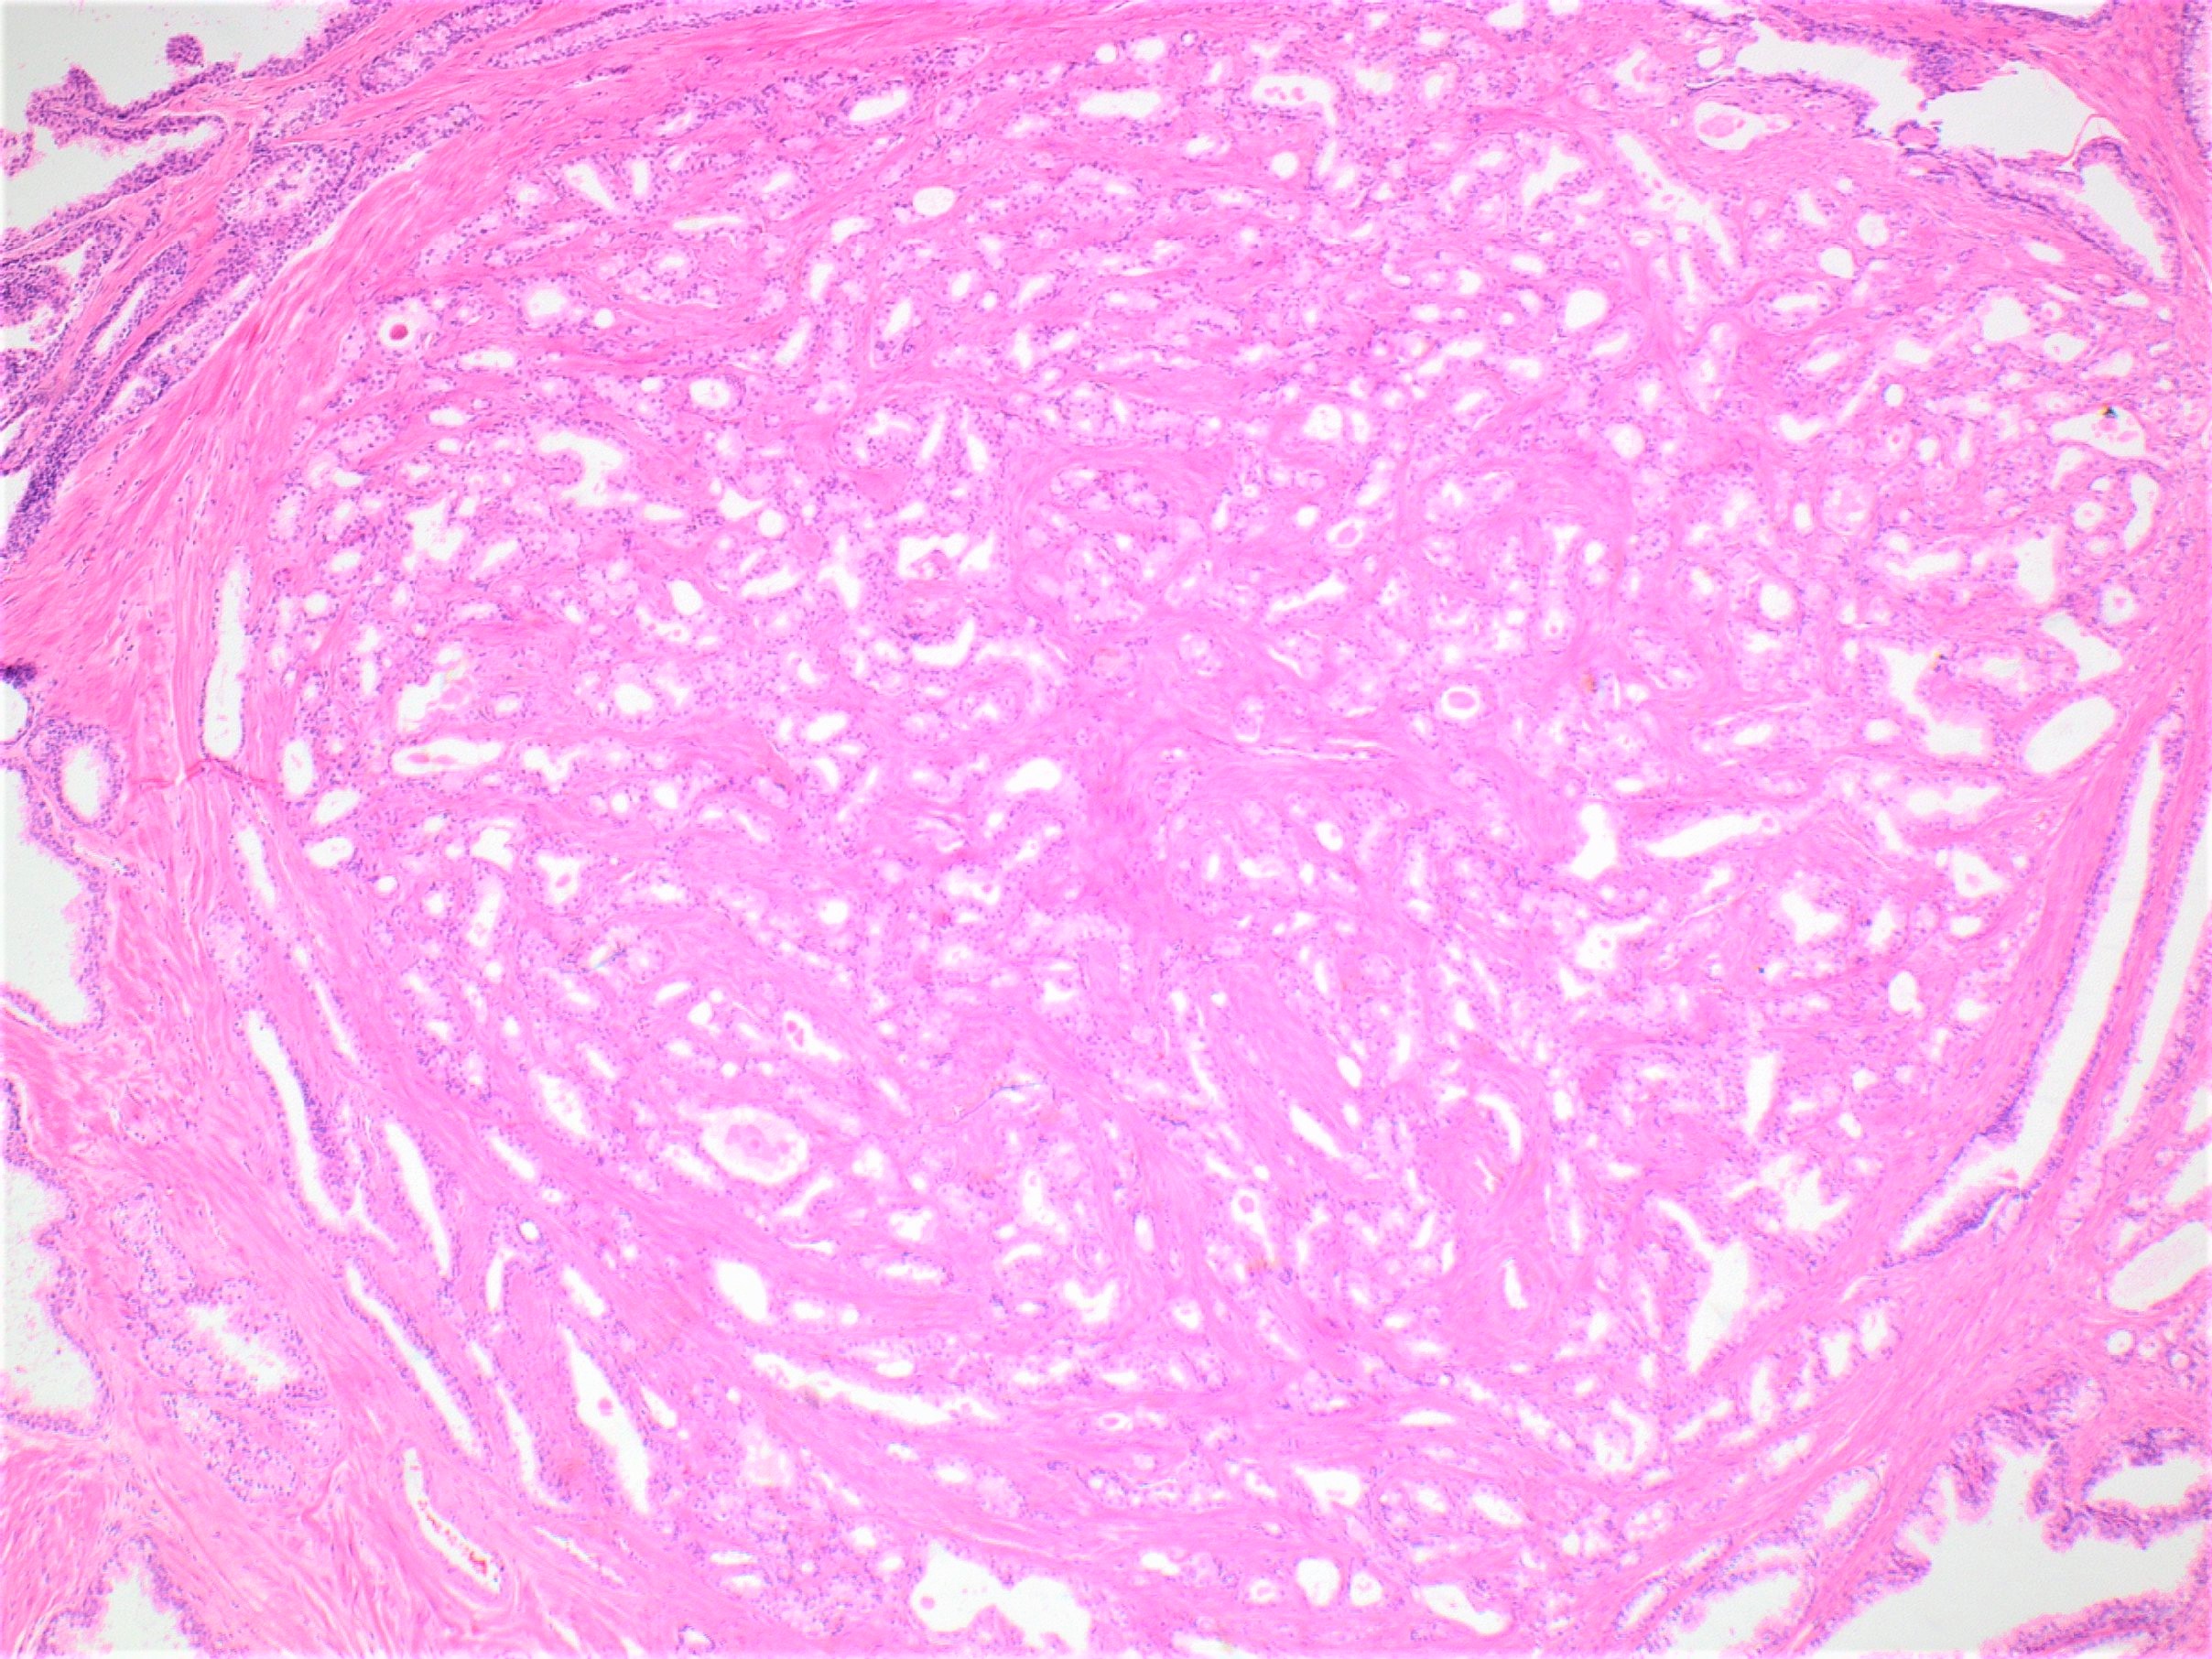 prostate adenoma pathology outlines a prosztata egyik része fáj